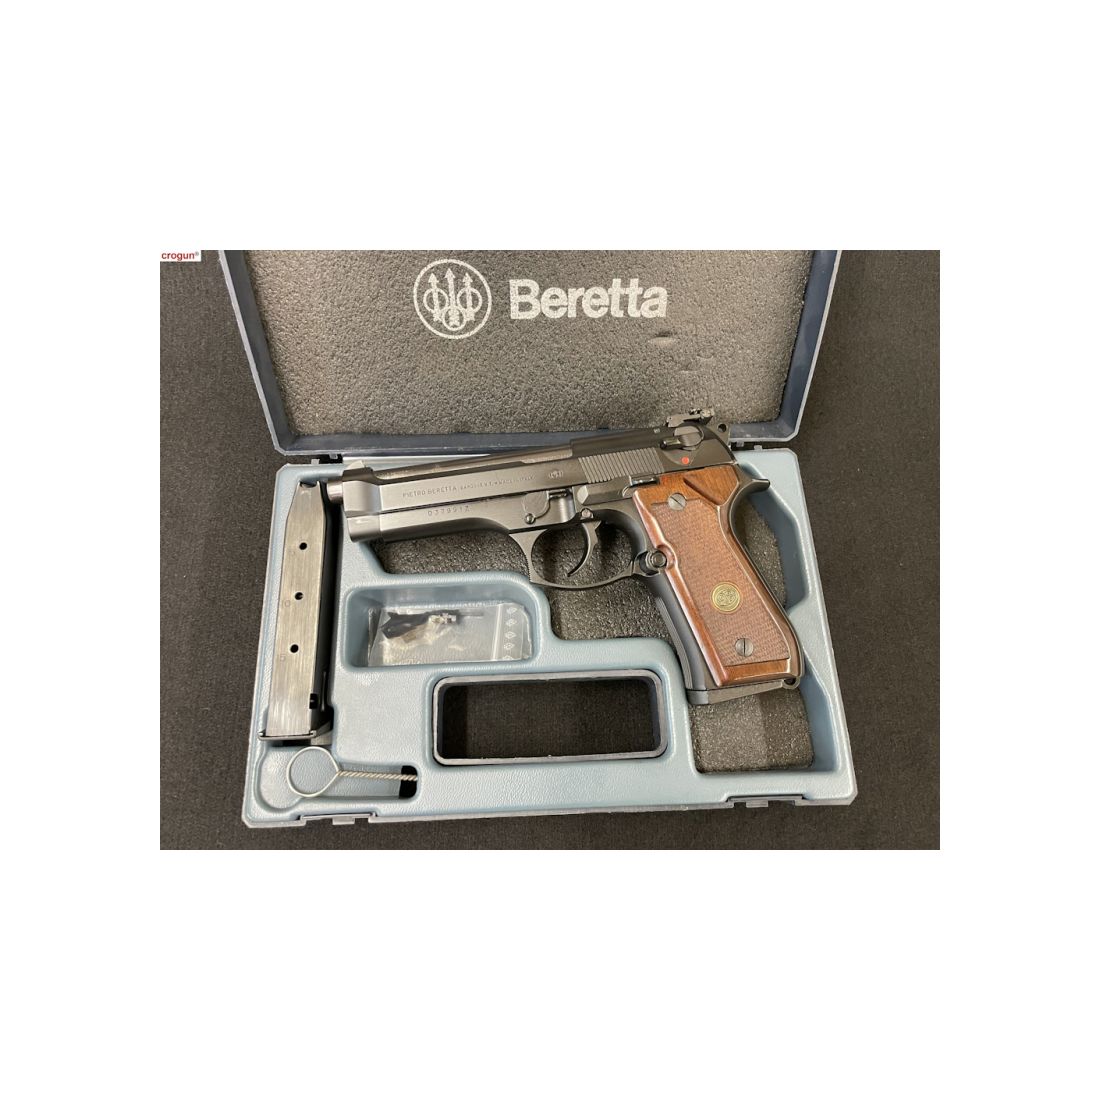 Halbautomatische Pistole Beretta 92 FS